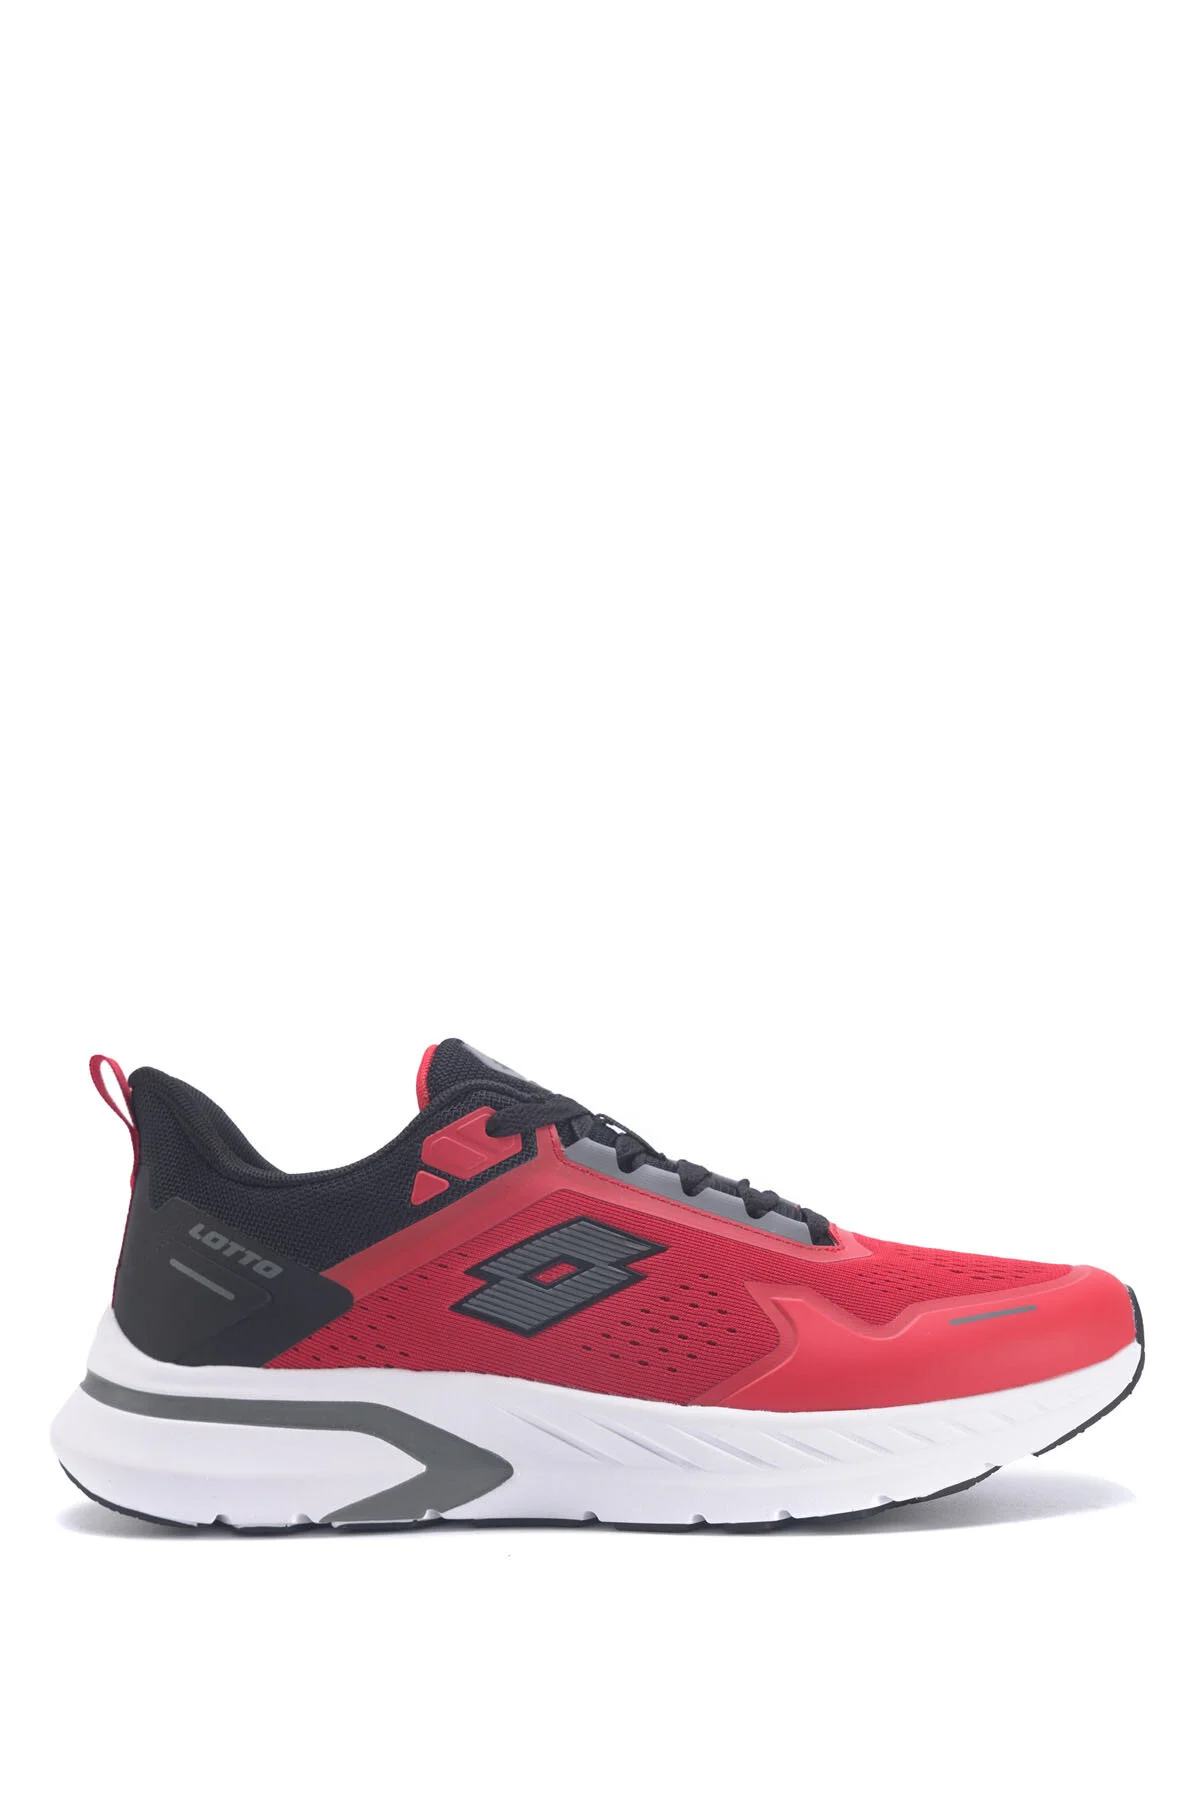 LOVELO 3FX Erkek Koşu Ayakkabısı-Kırmızı